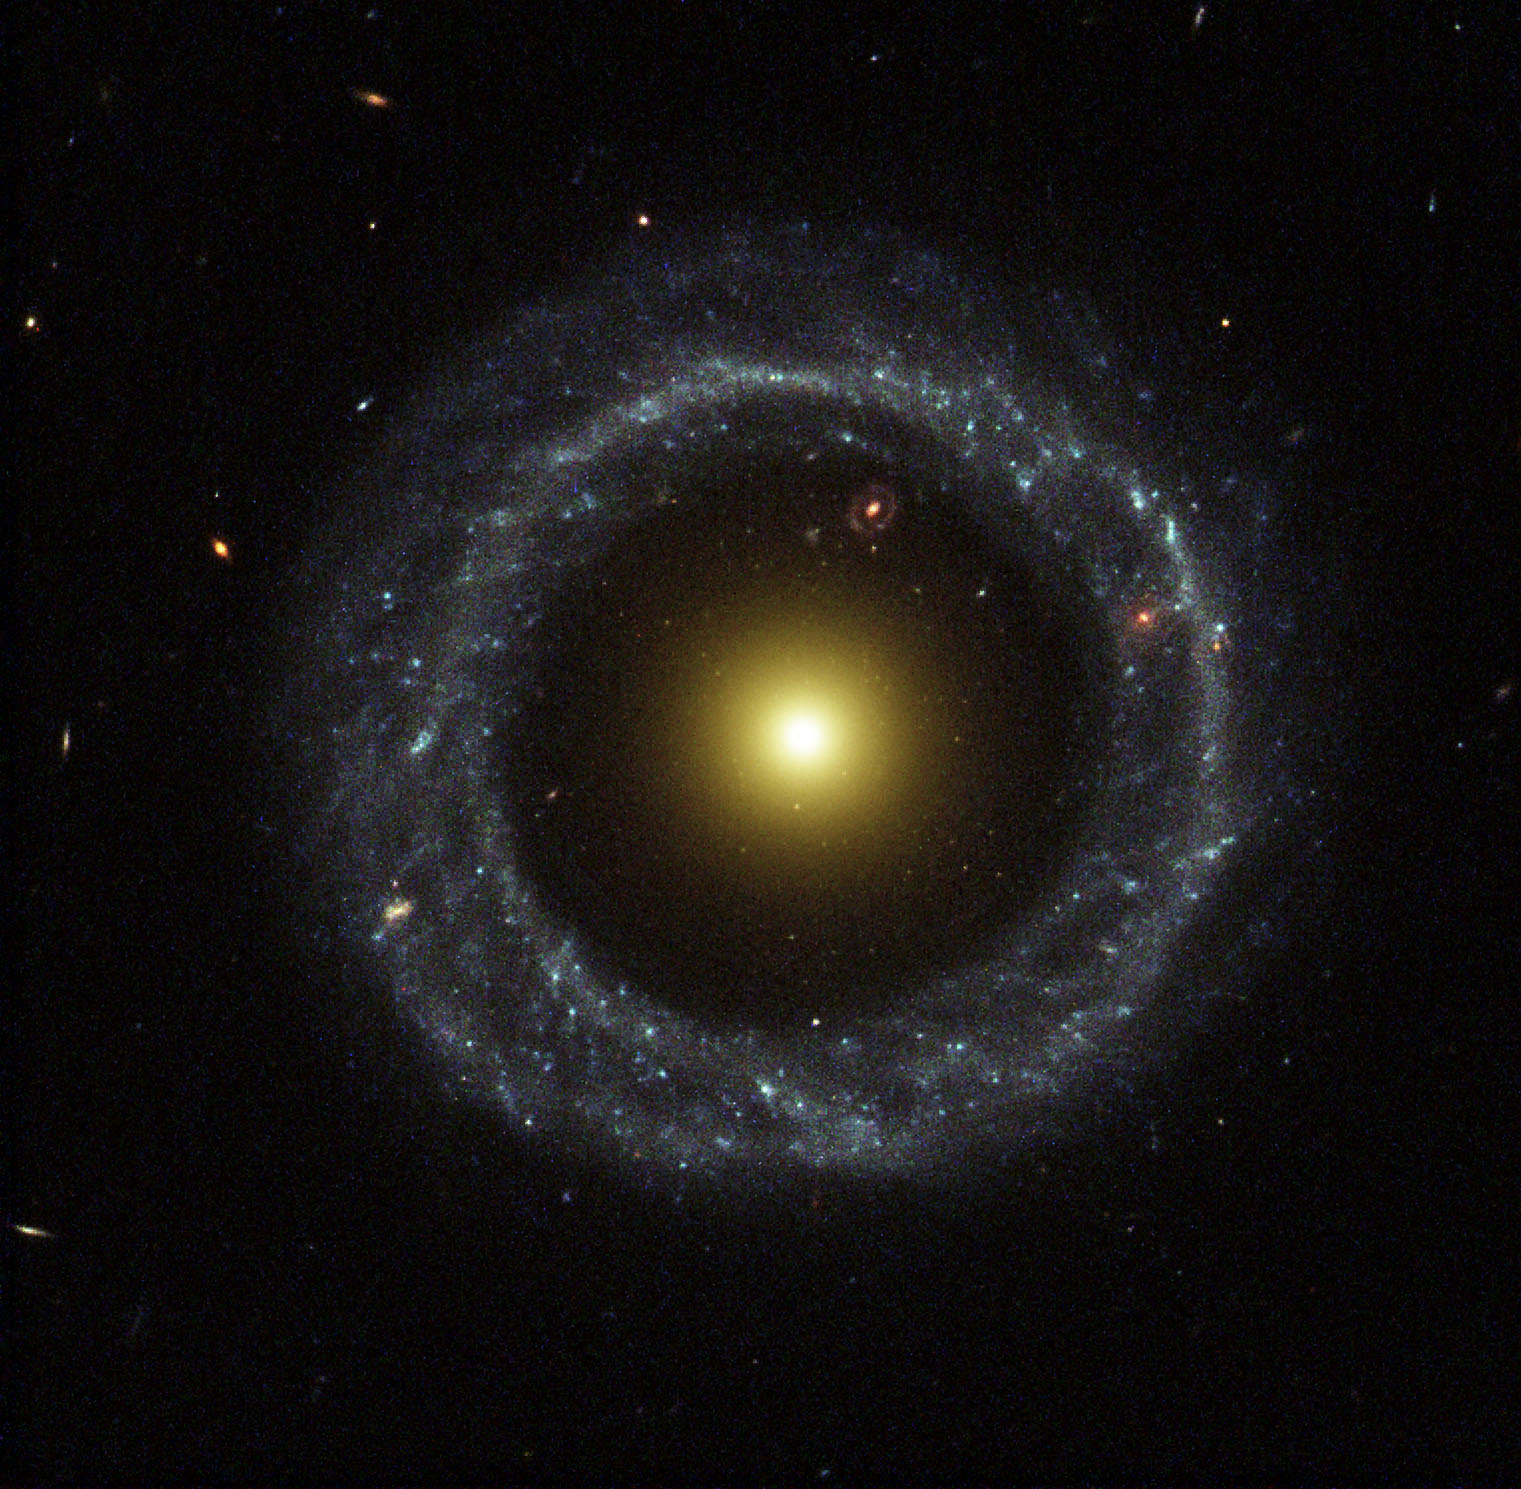 Objet de Hoag : une étrange galaxie anneau